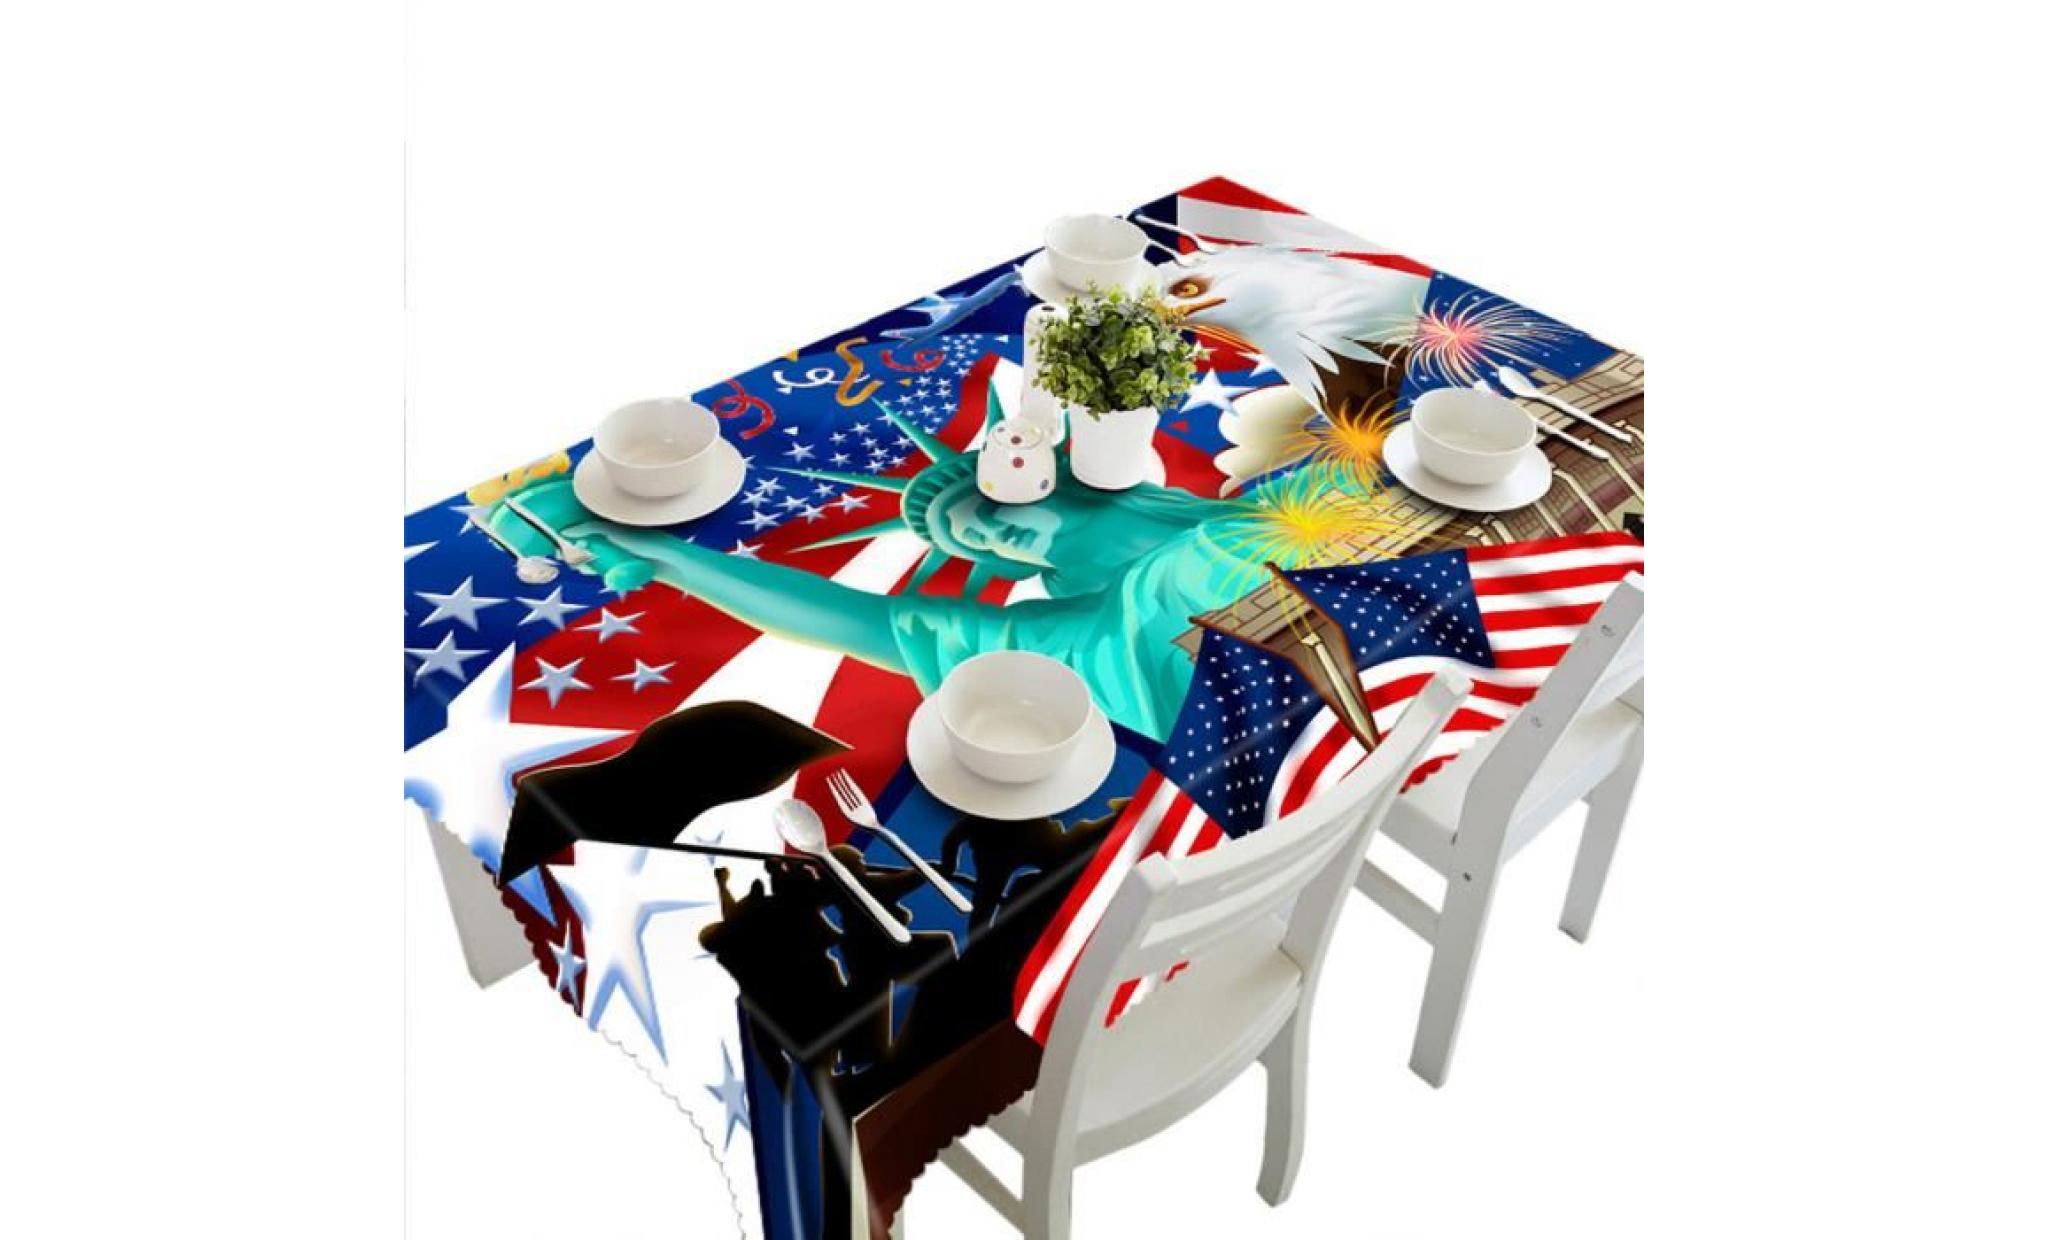 3d multi table à manger fonctionnelle tissu pour picnic party b nappe@hxq122